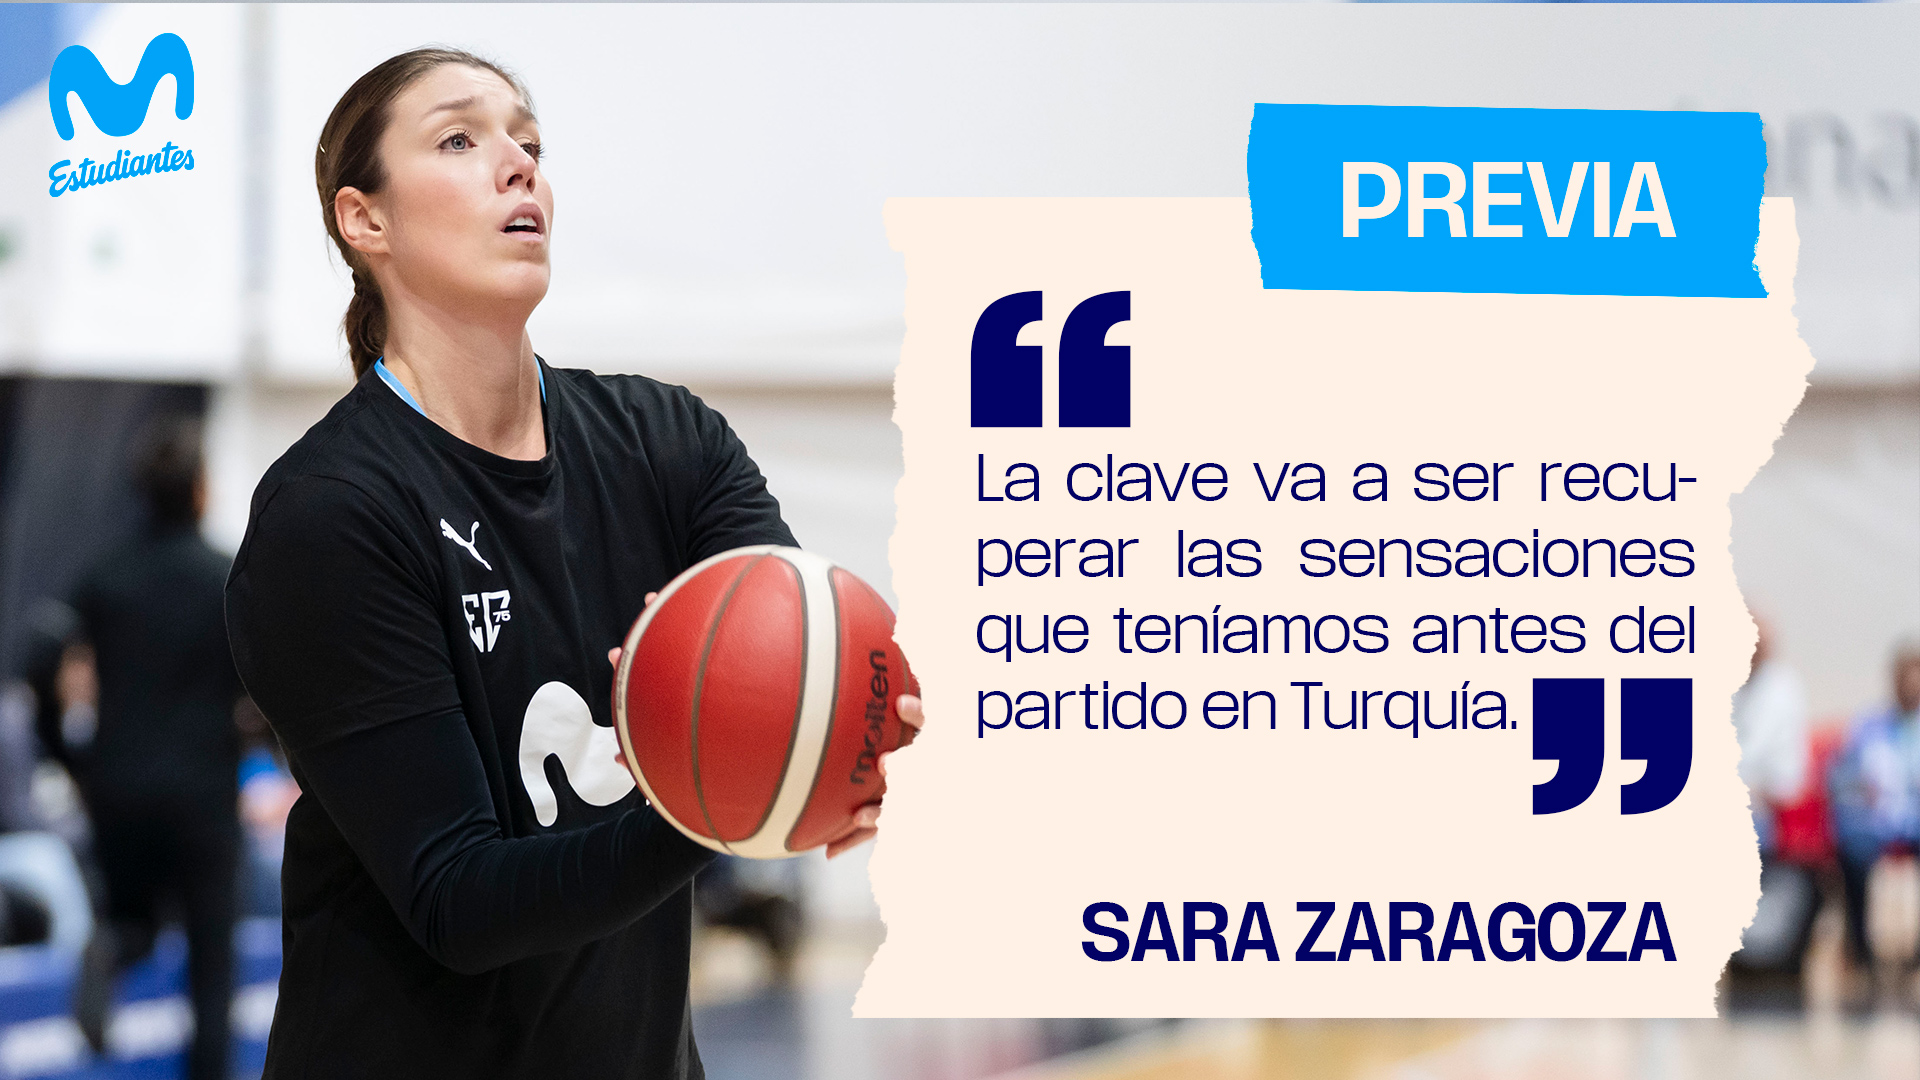 Sara Zaragoza: «la clave a ser recuperar las sensaciones que teníamos antes del partido de Turquía».